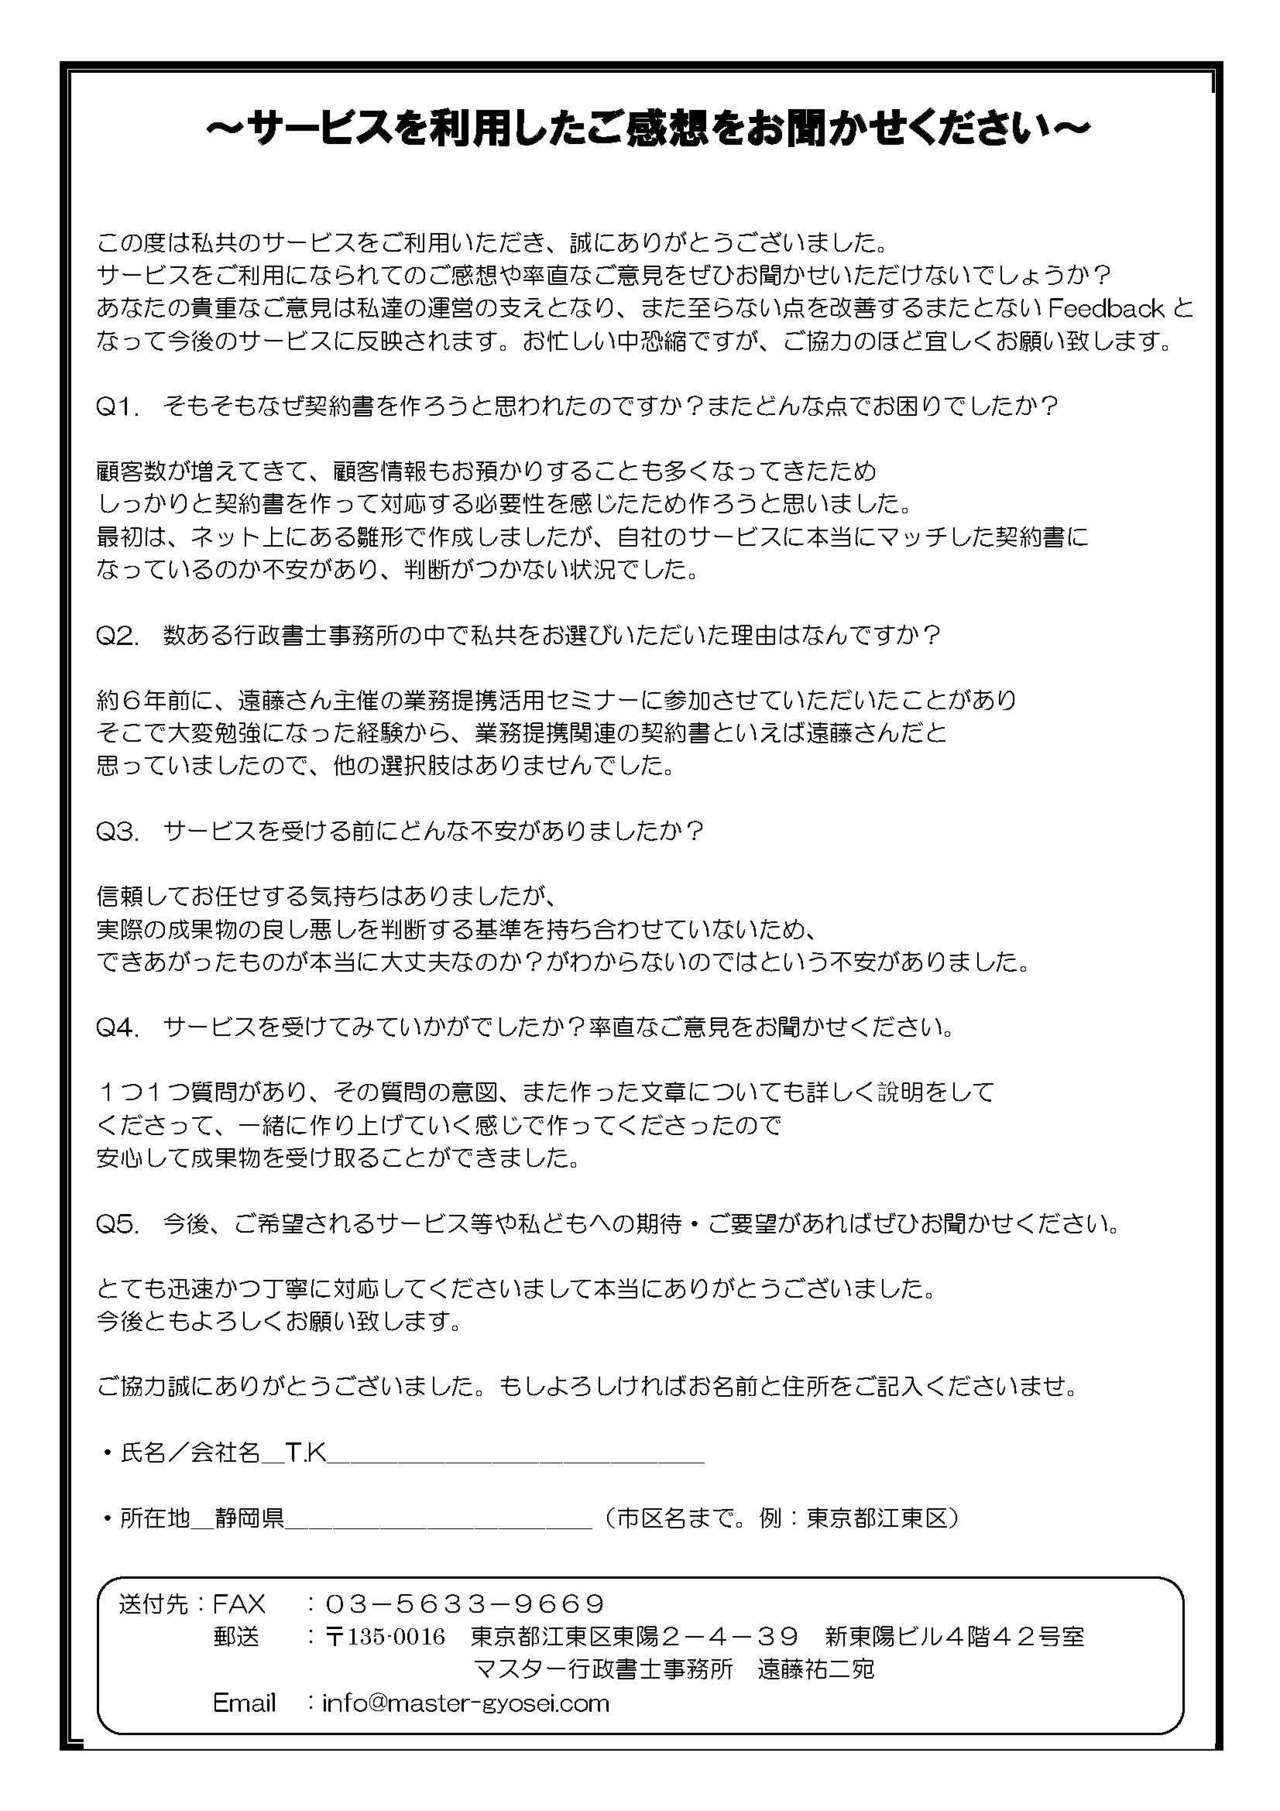 Katsumata Questionnaire.jpg